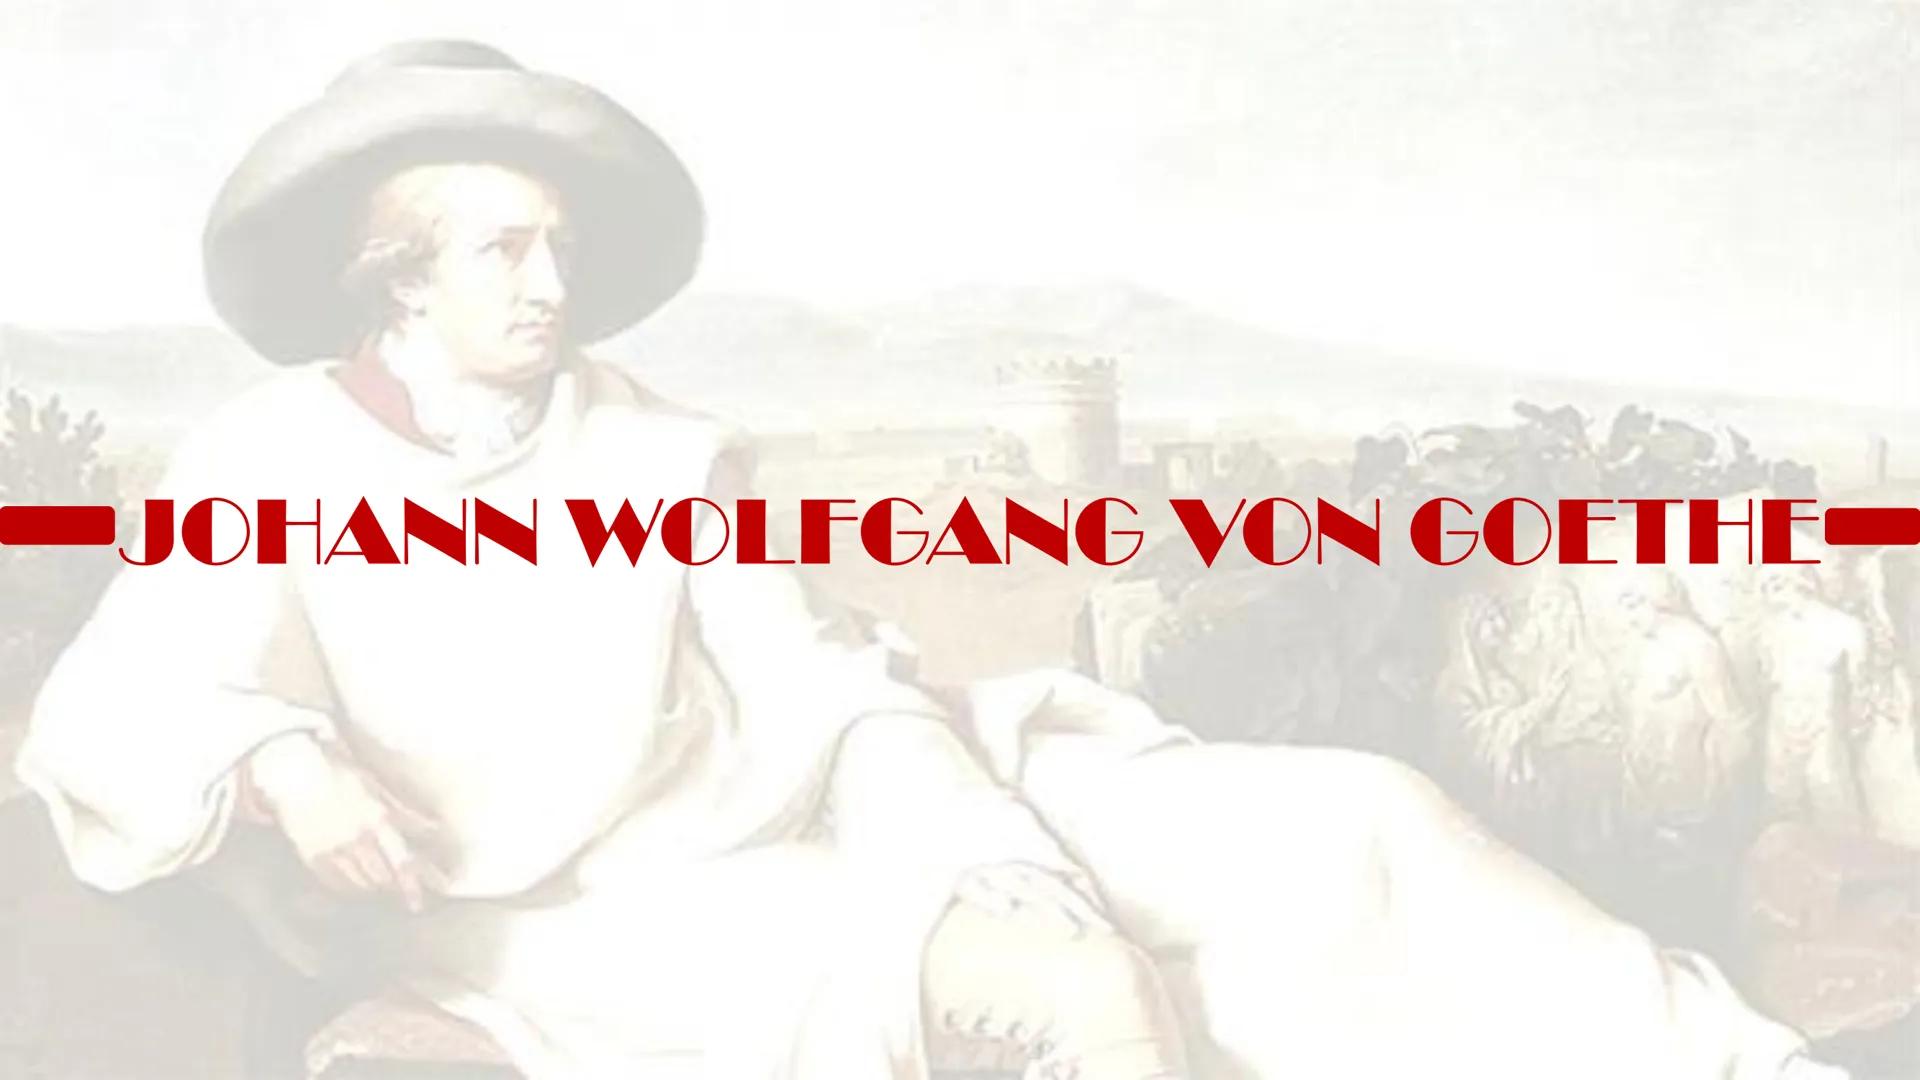 JOHANN WOLFGANG VON GOETHE
leben
geboren: 28. August 1749 in Frankfurt am Main
• erhielt mit Schwester Cornelia Frederike teils vom Vater Pr